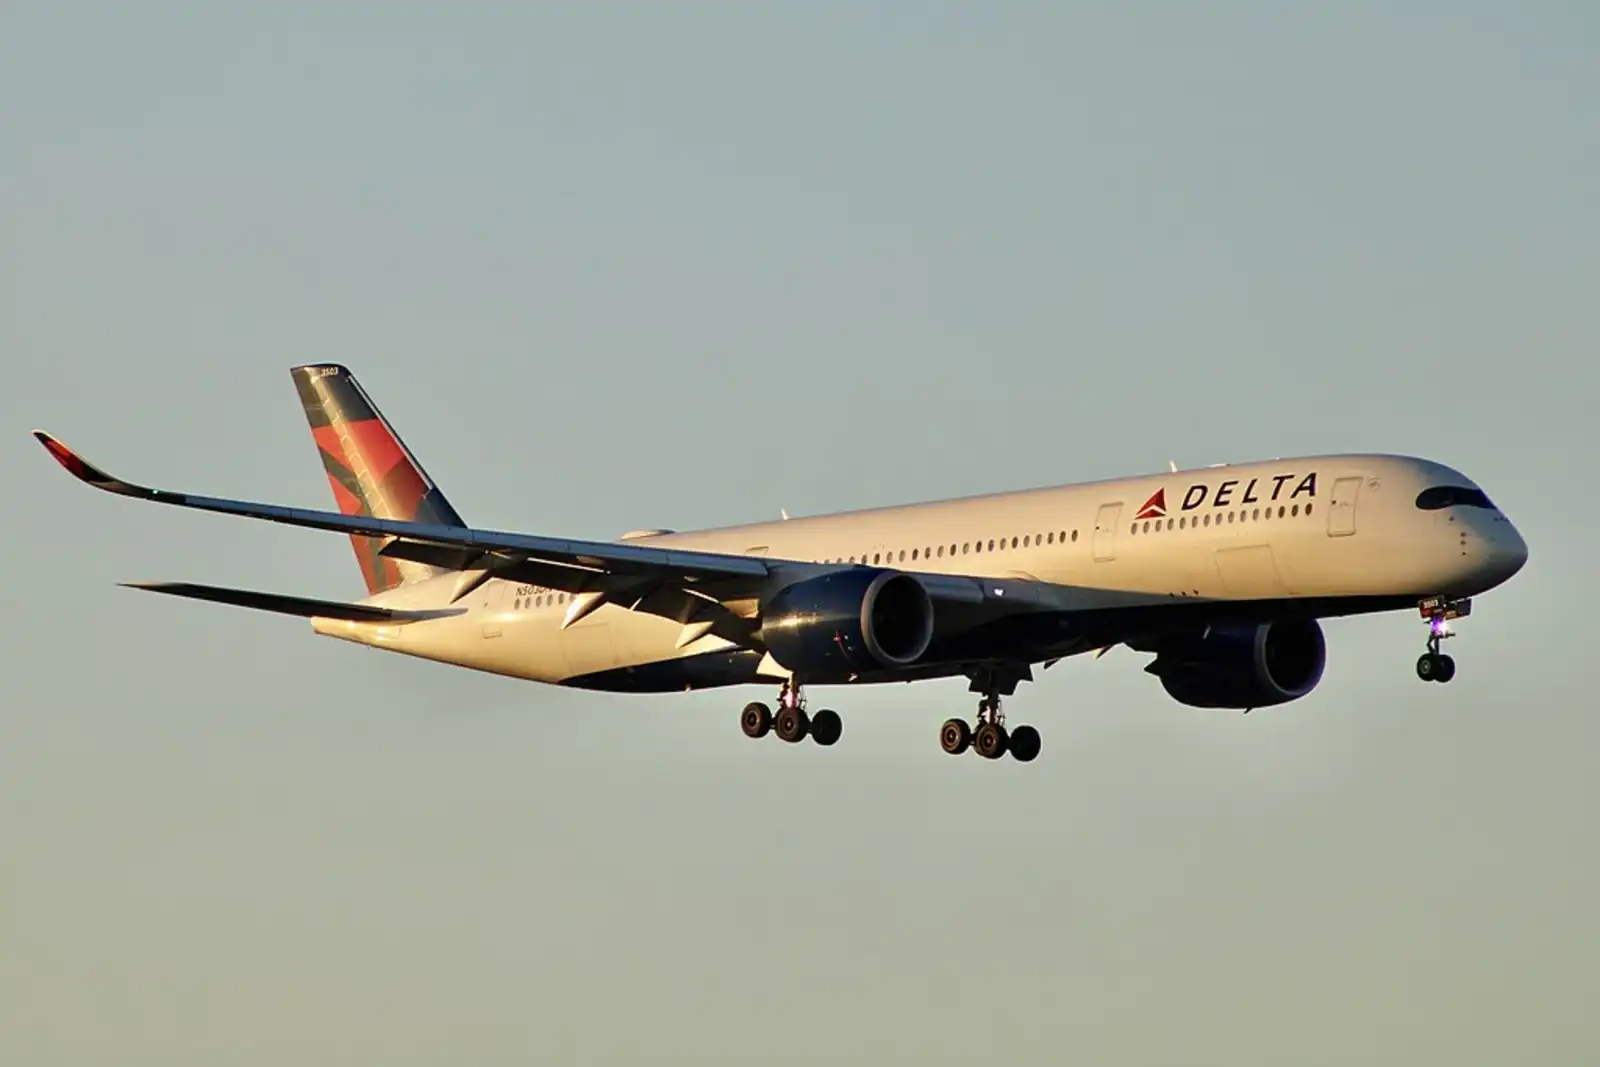 СМИ: у самолета Boeing 767 во время полета оторвался аварийный трап